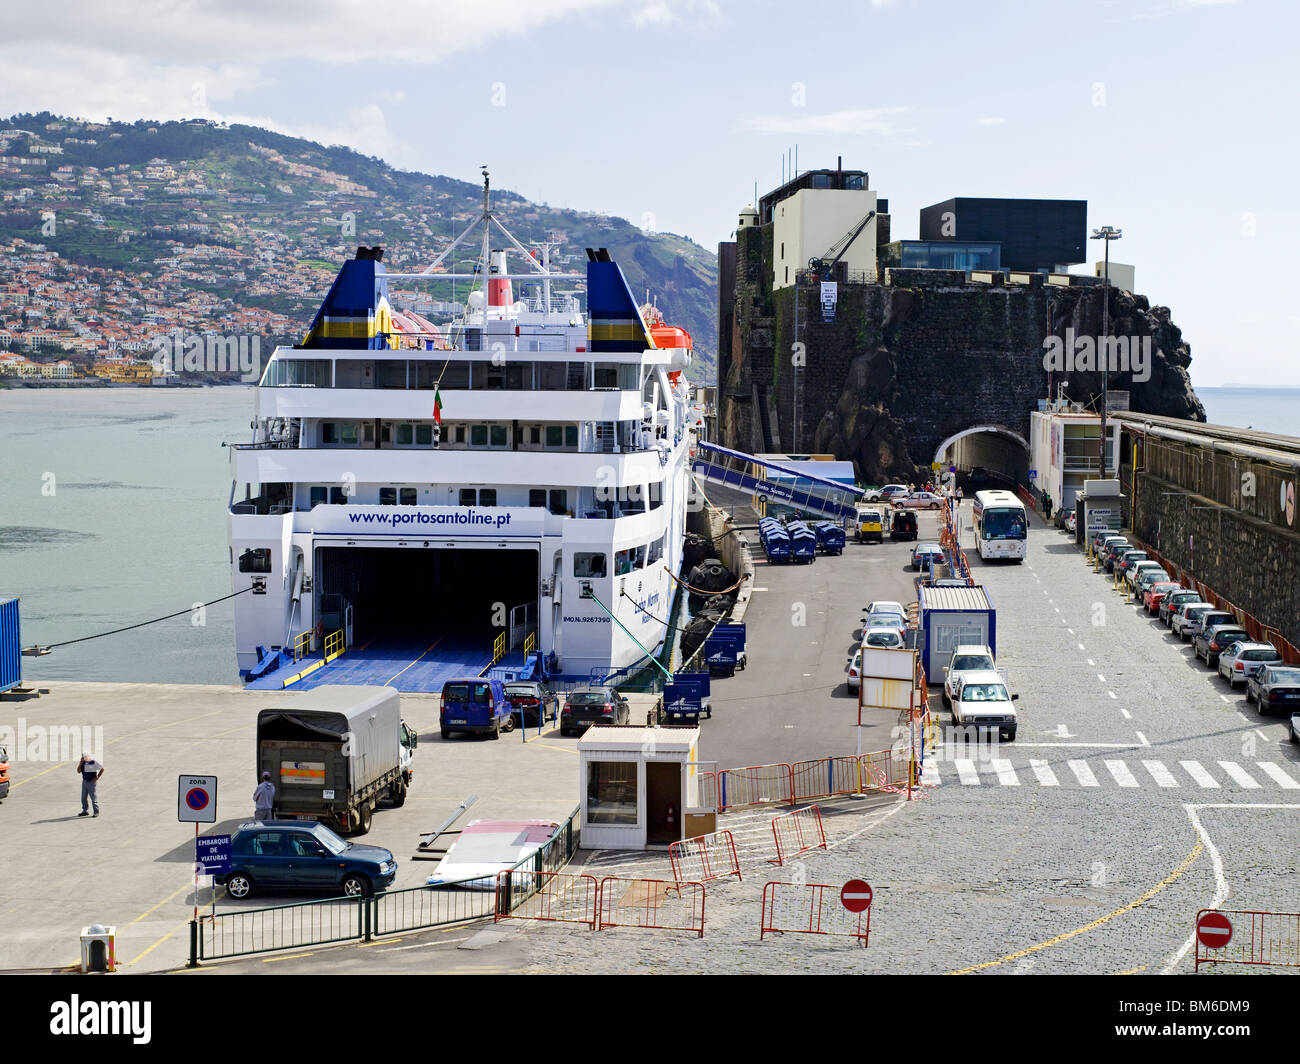 Madeira by ferry -Fotos und -Bildmaterial in hoher Auflösung – Alamy